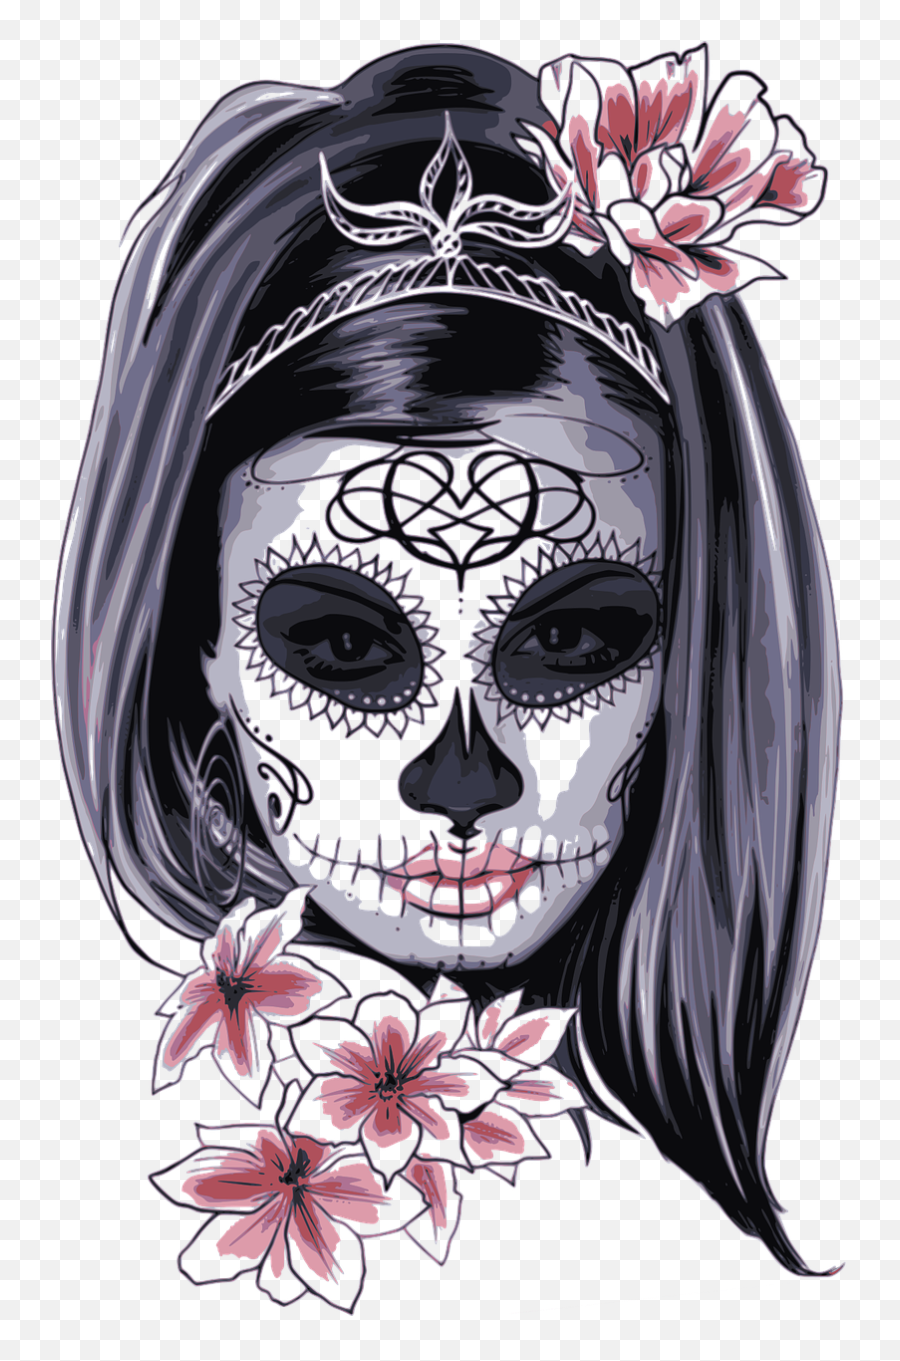 Skull La Calavera Catrina Dead Drawing - Dia Dos Mortos Desenho Emoji,Emoticon De Calavera